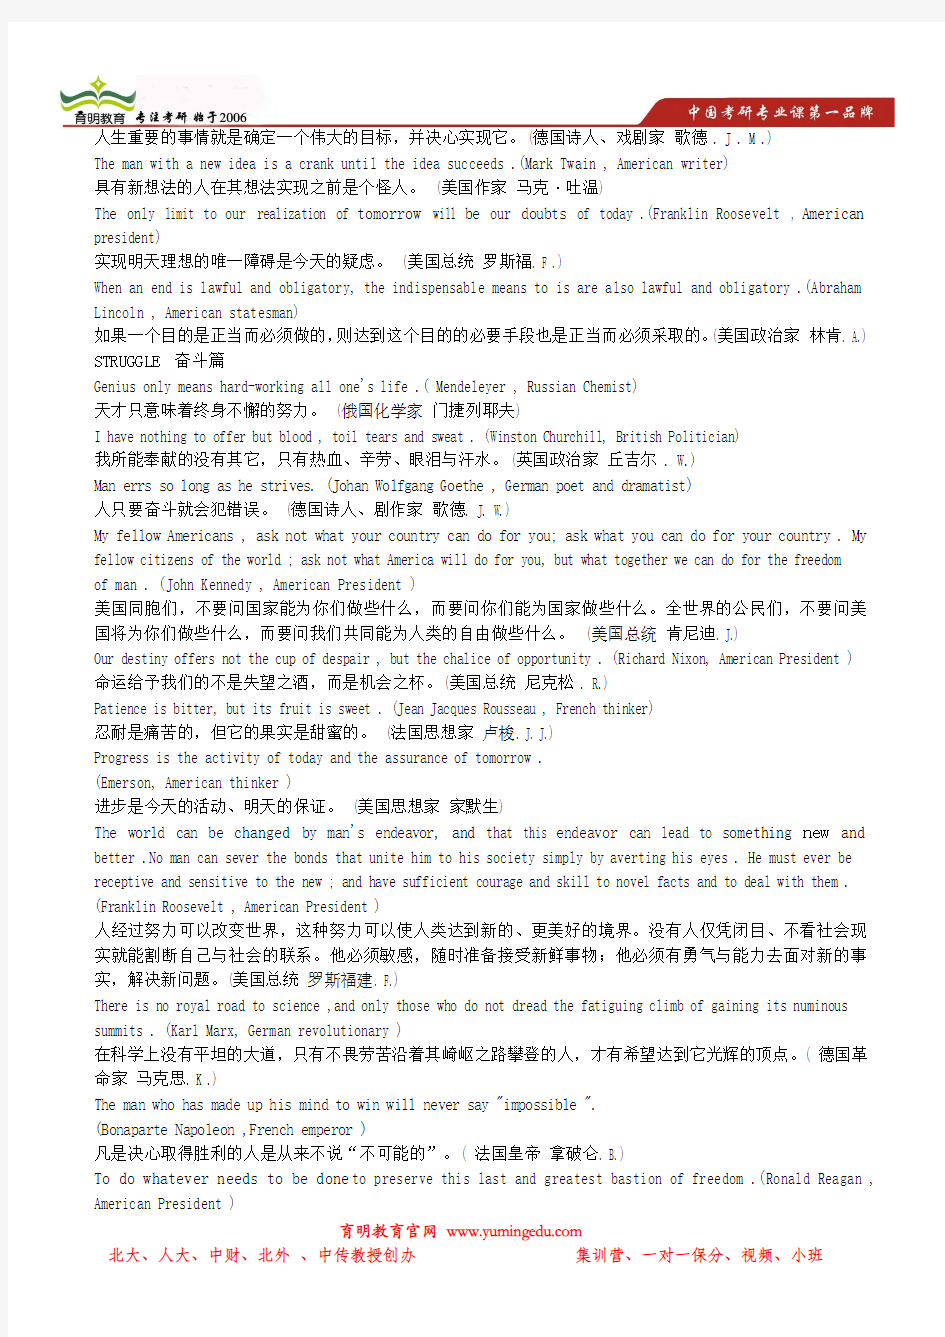 2014年北京外国语大学英语学院811英语能力测试(写作)资料名人名言汇编